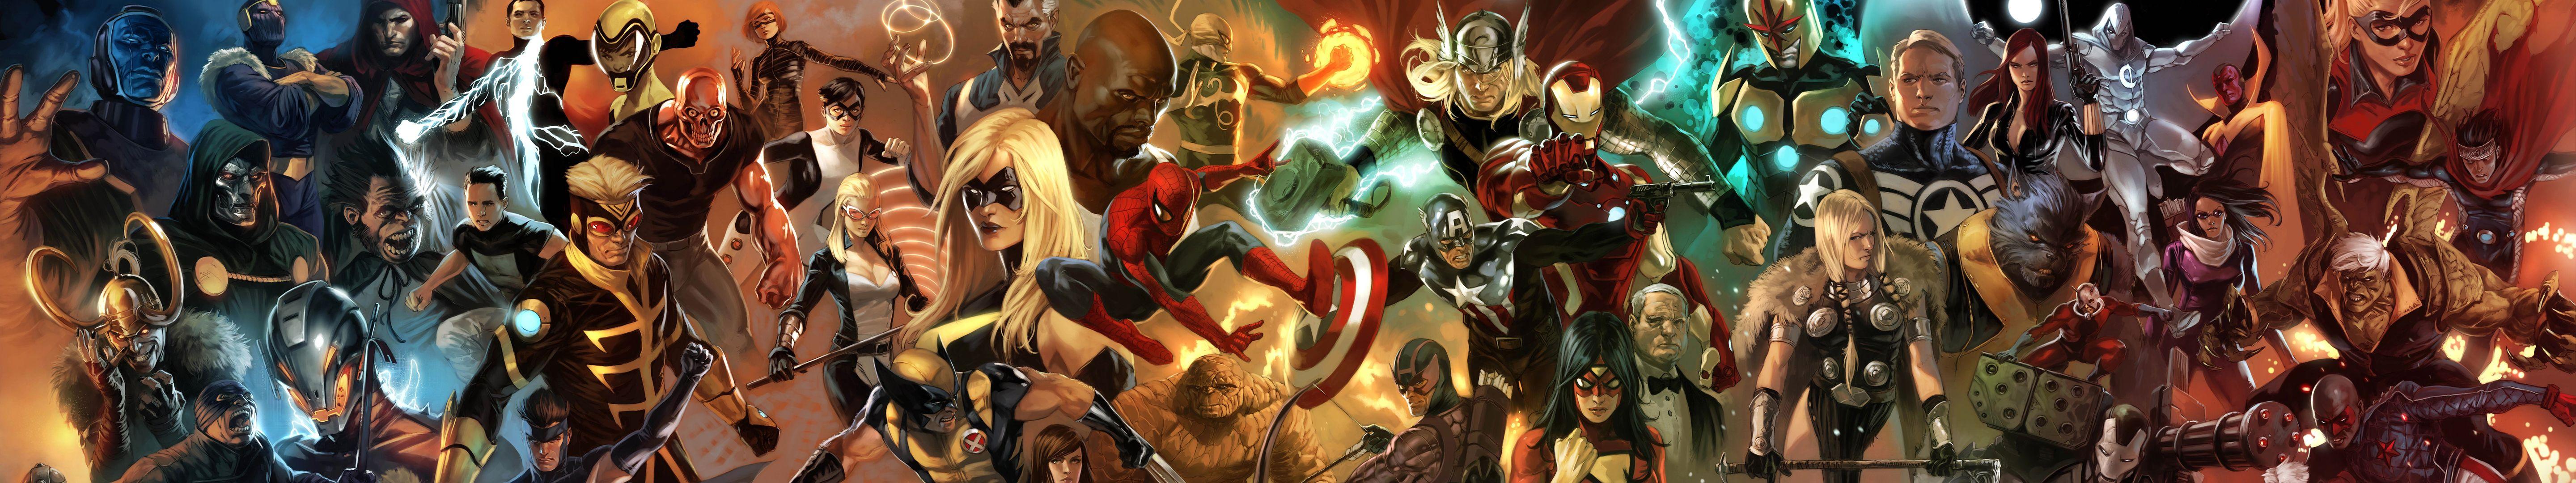 Avengers: Từ Iron Man, Captain America, Thor, Hulk cho đến Black Panther hay Spider-Man - Avenger chính là sự kết hợp giữa tất cả những siêu anh hùng yêu thích. Hãy thưởng thức những hình ảnh độc đáo của đội siêu anh hùng này.